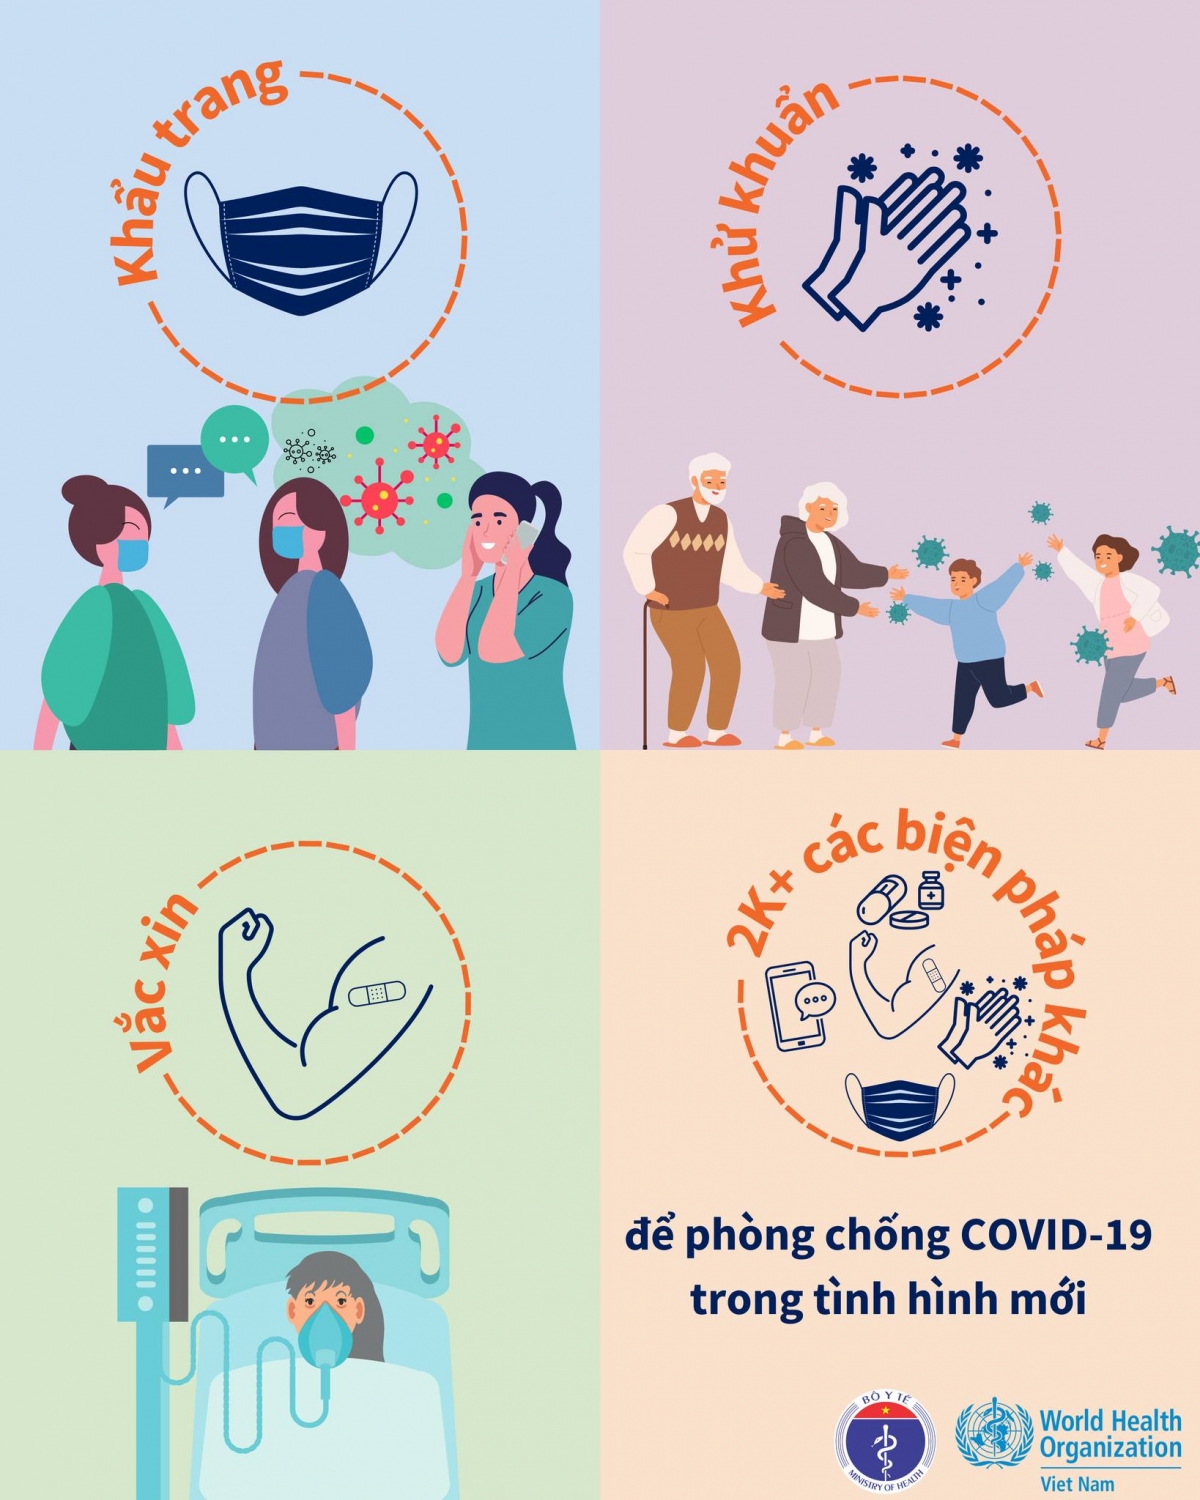 Tổ chức Y tế Thế giới khuyến cáo tiếp tục các biện pháp 2K+ phòng lây nhiễm COVID-19.